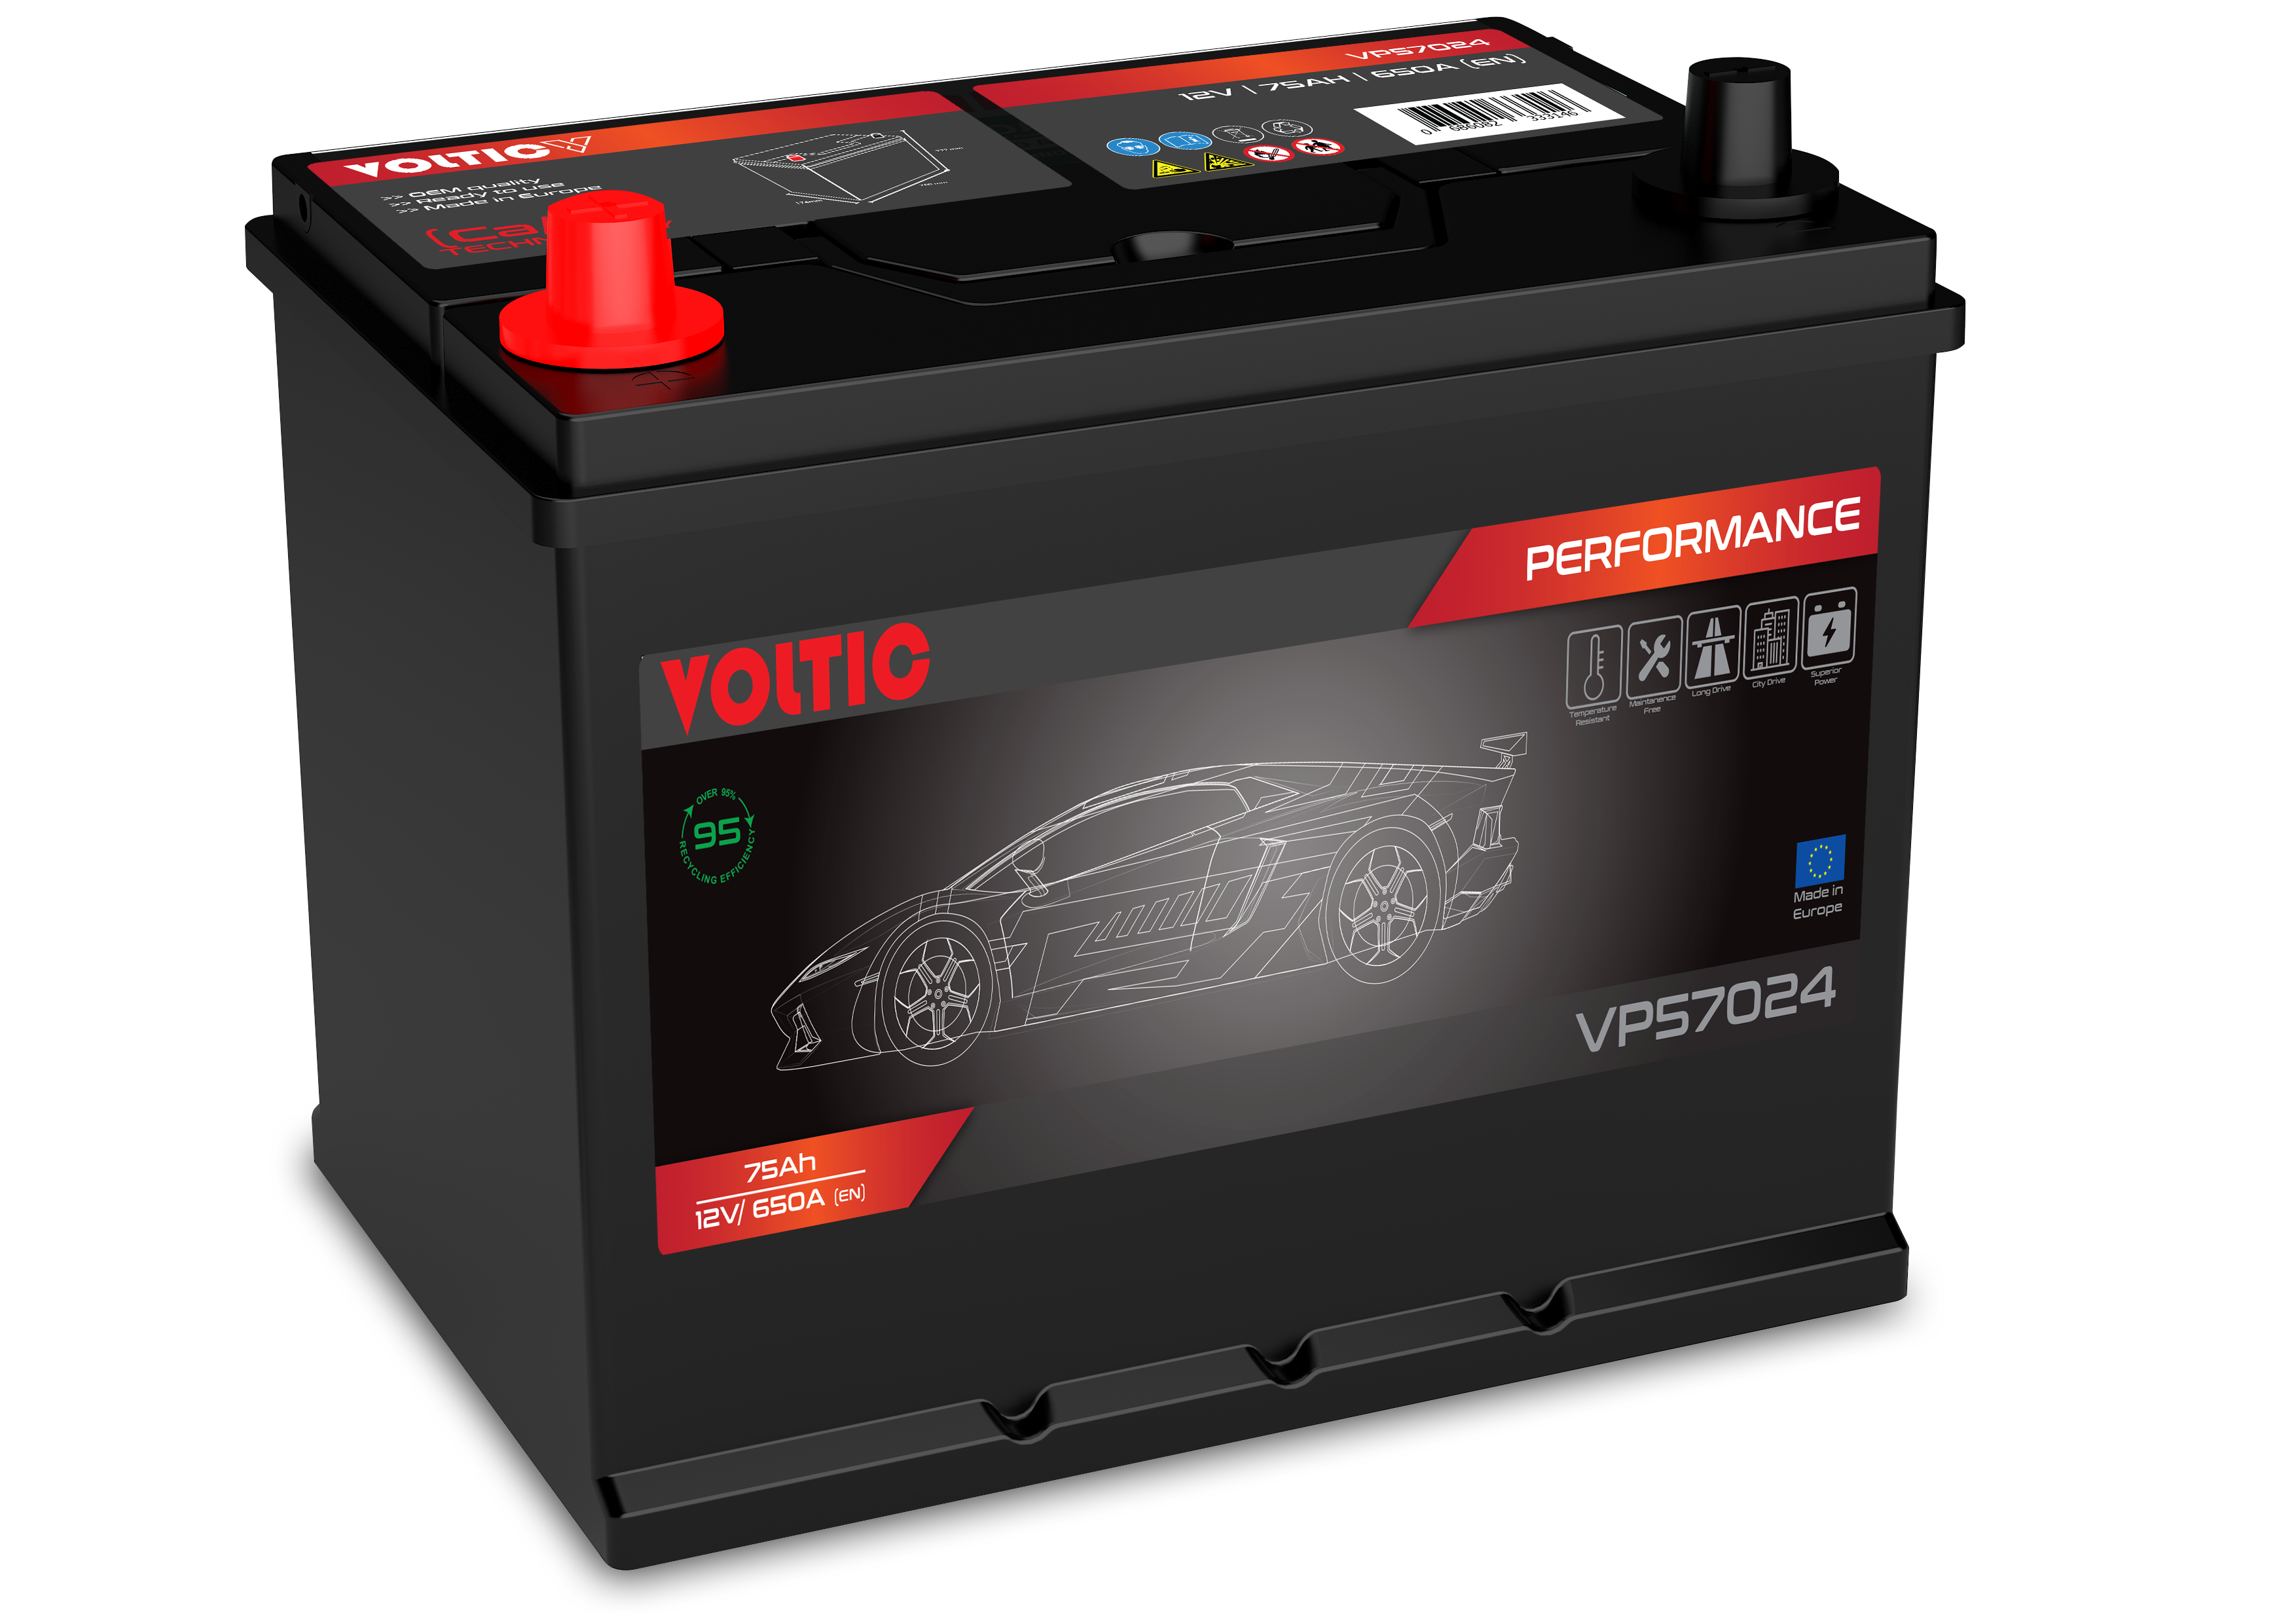 Voltic VP57024 Perfomance 75Ah Autobatterie 570 413 063